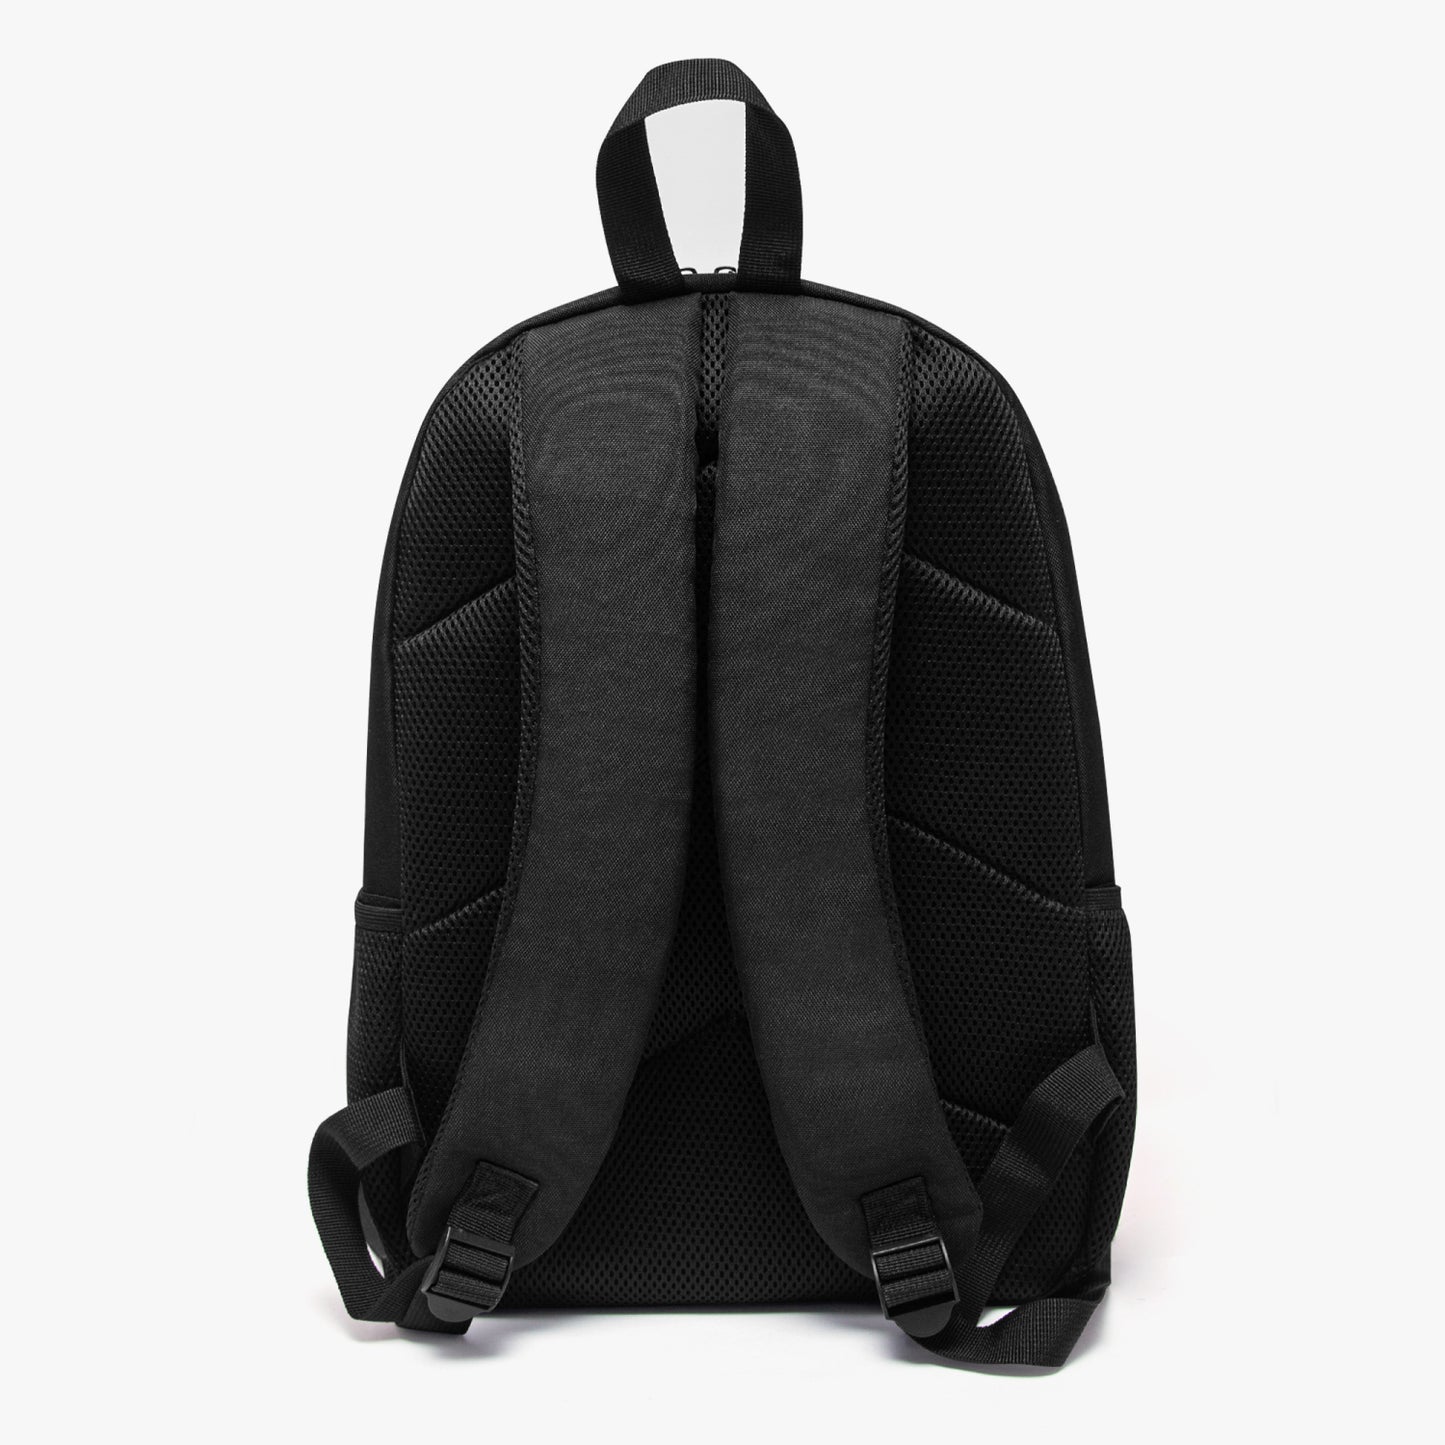 DRAKEN YELLOW Laptop Backpack